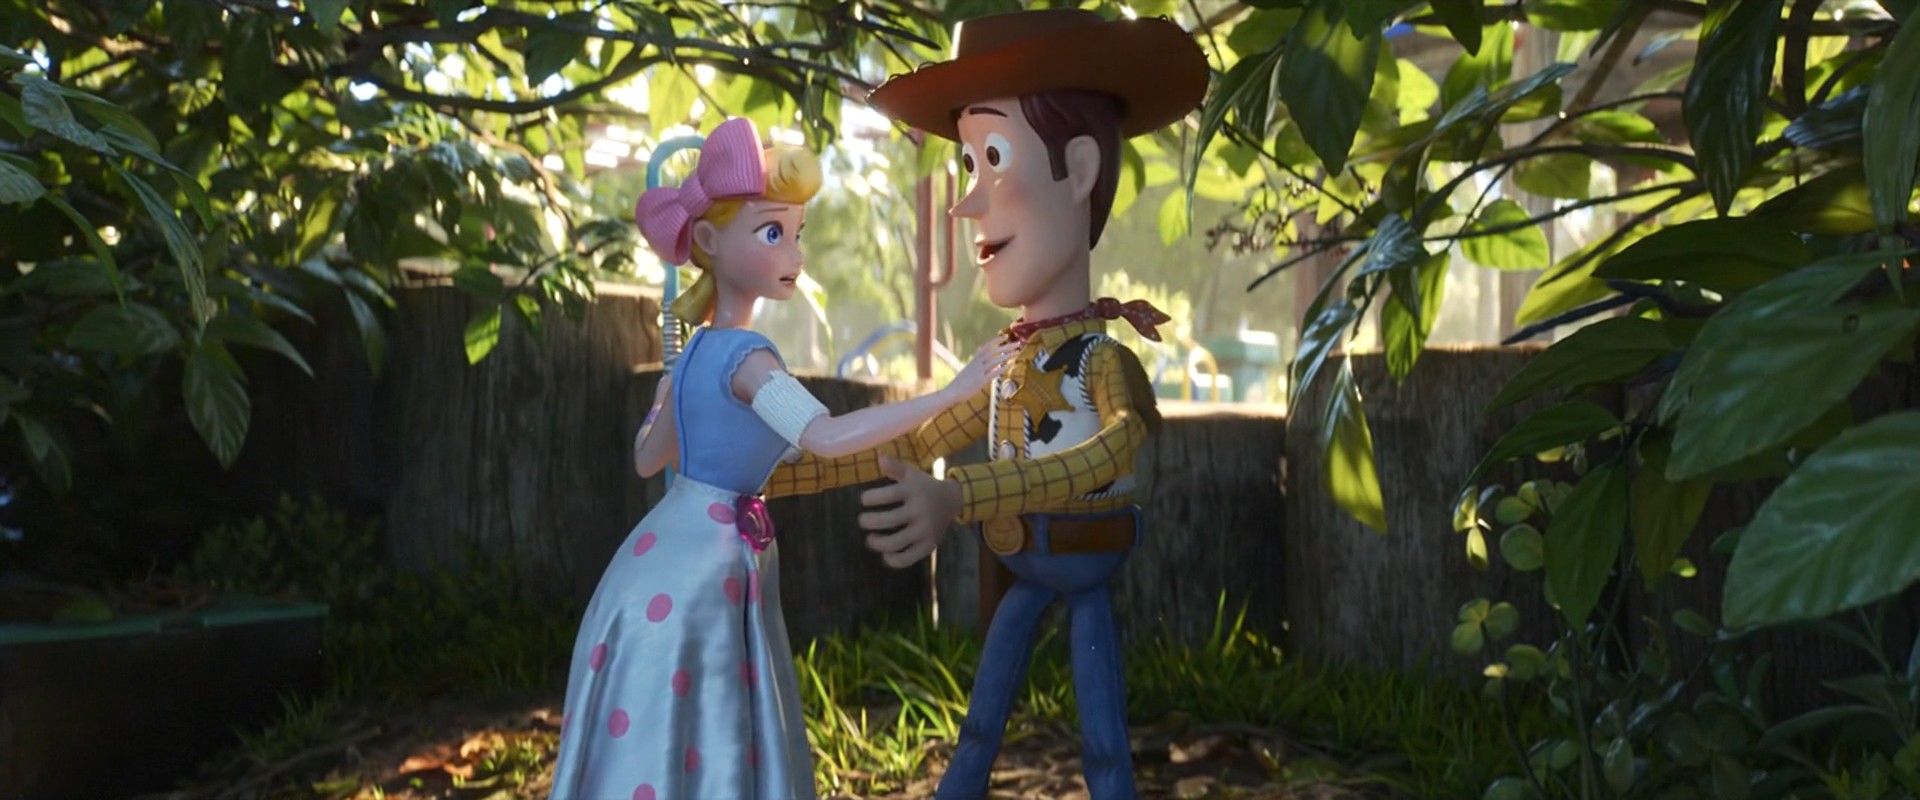  Toy Story 4 (2019) HD 720p Latino